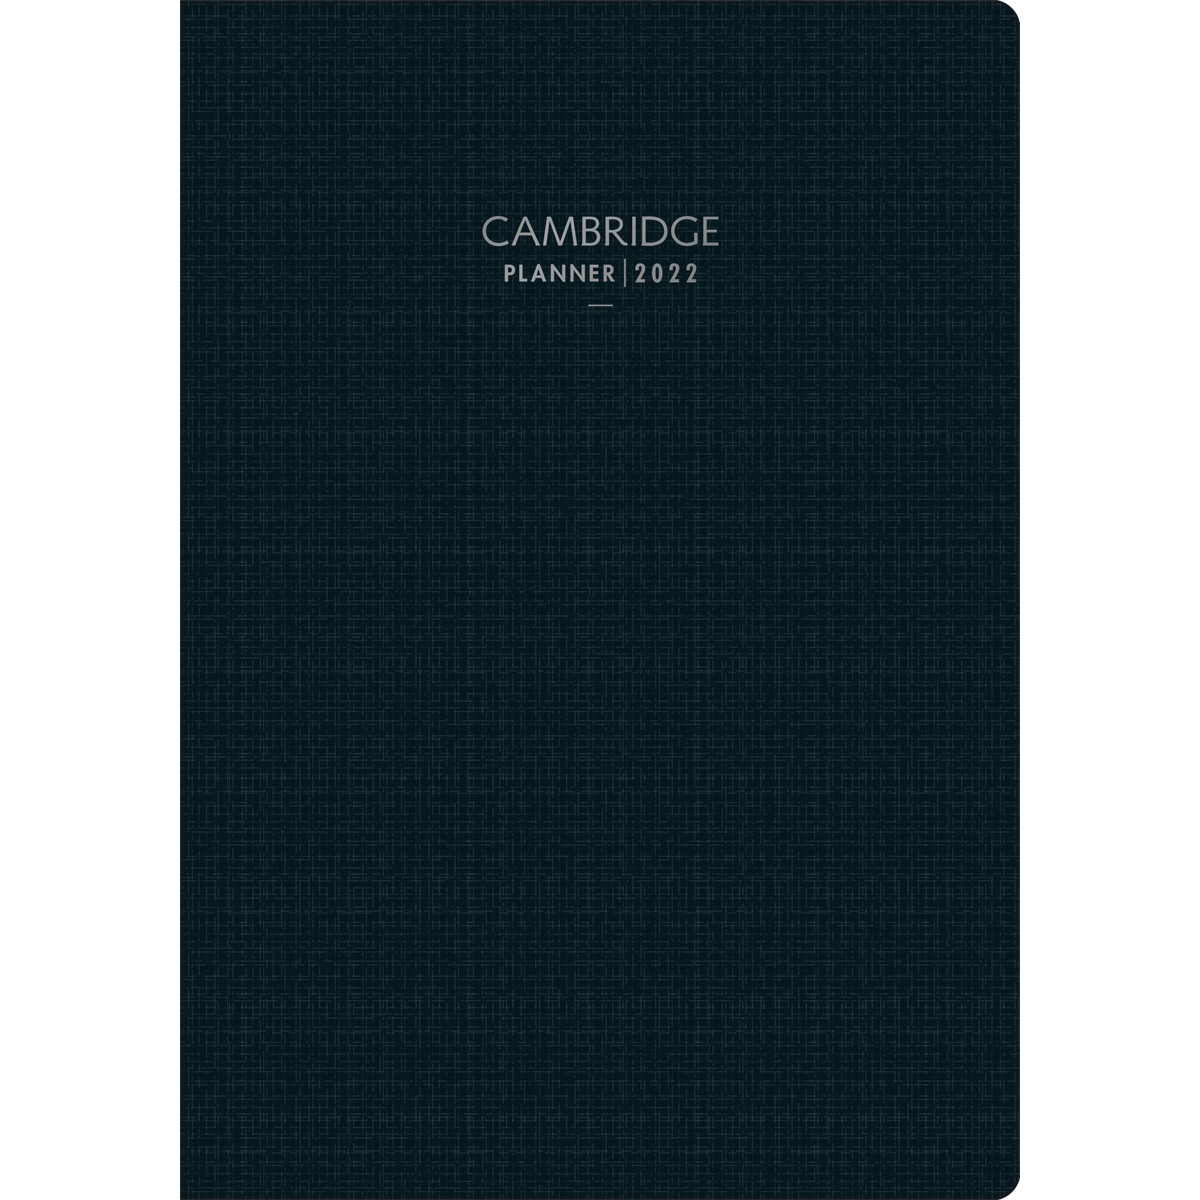 Planner Executivo Grampeado 17,8x25,4cm Cambridge 90gr. 2022 - Tilibra